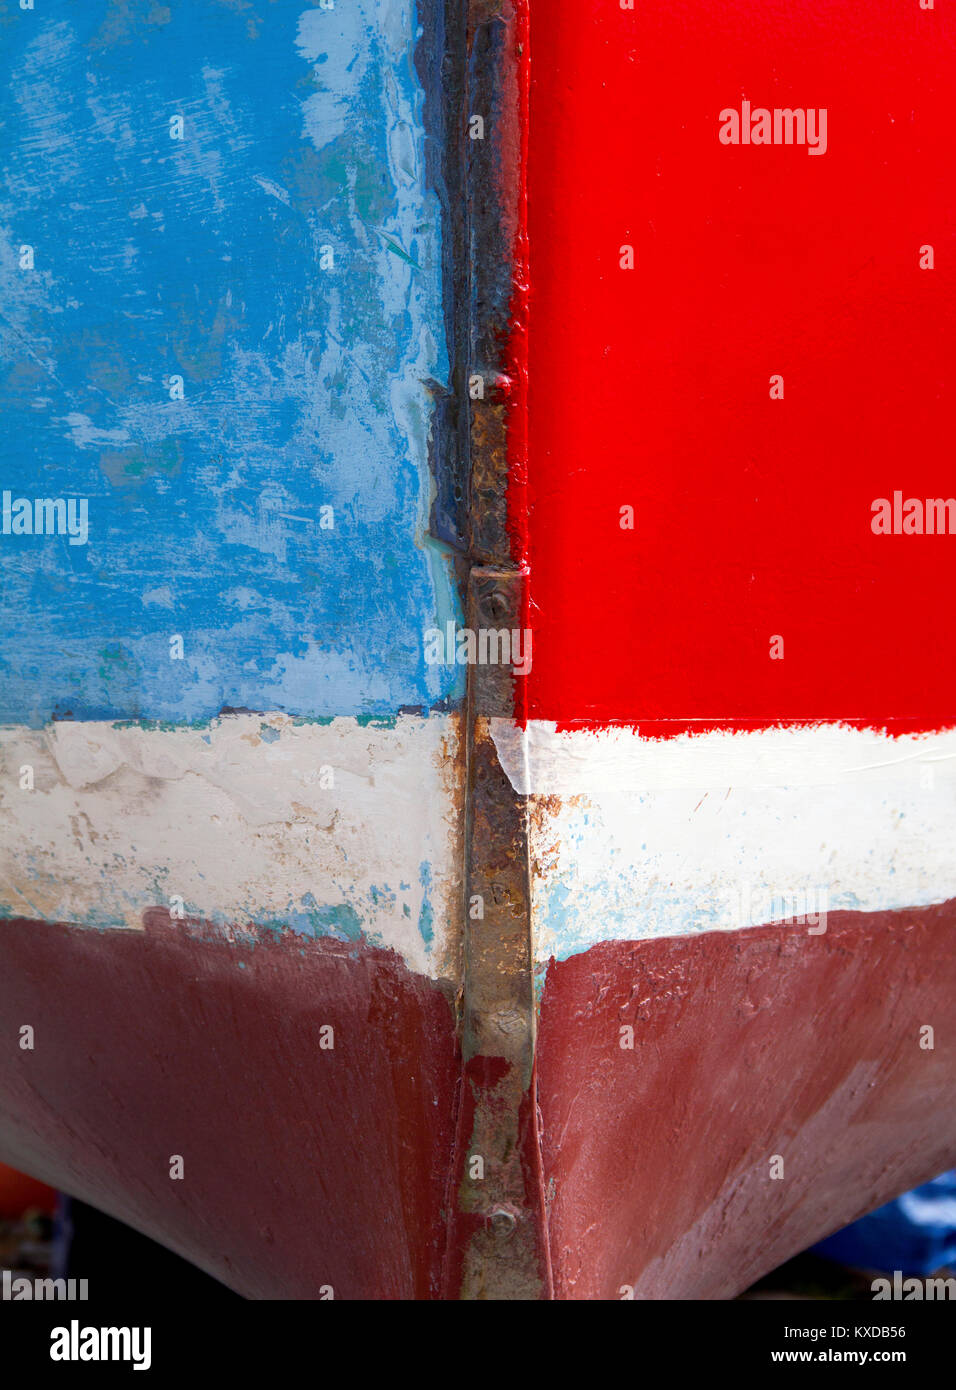 Un résumé sur la proue d'un bateau, peint dans des blocs de couleurs différentes. Banque D'Images